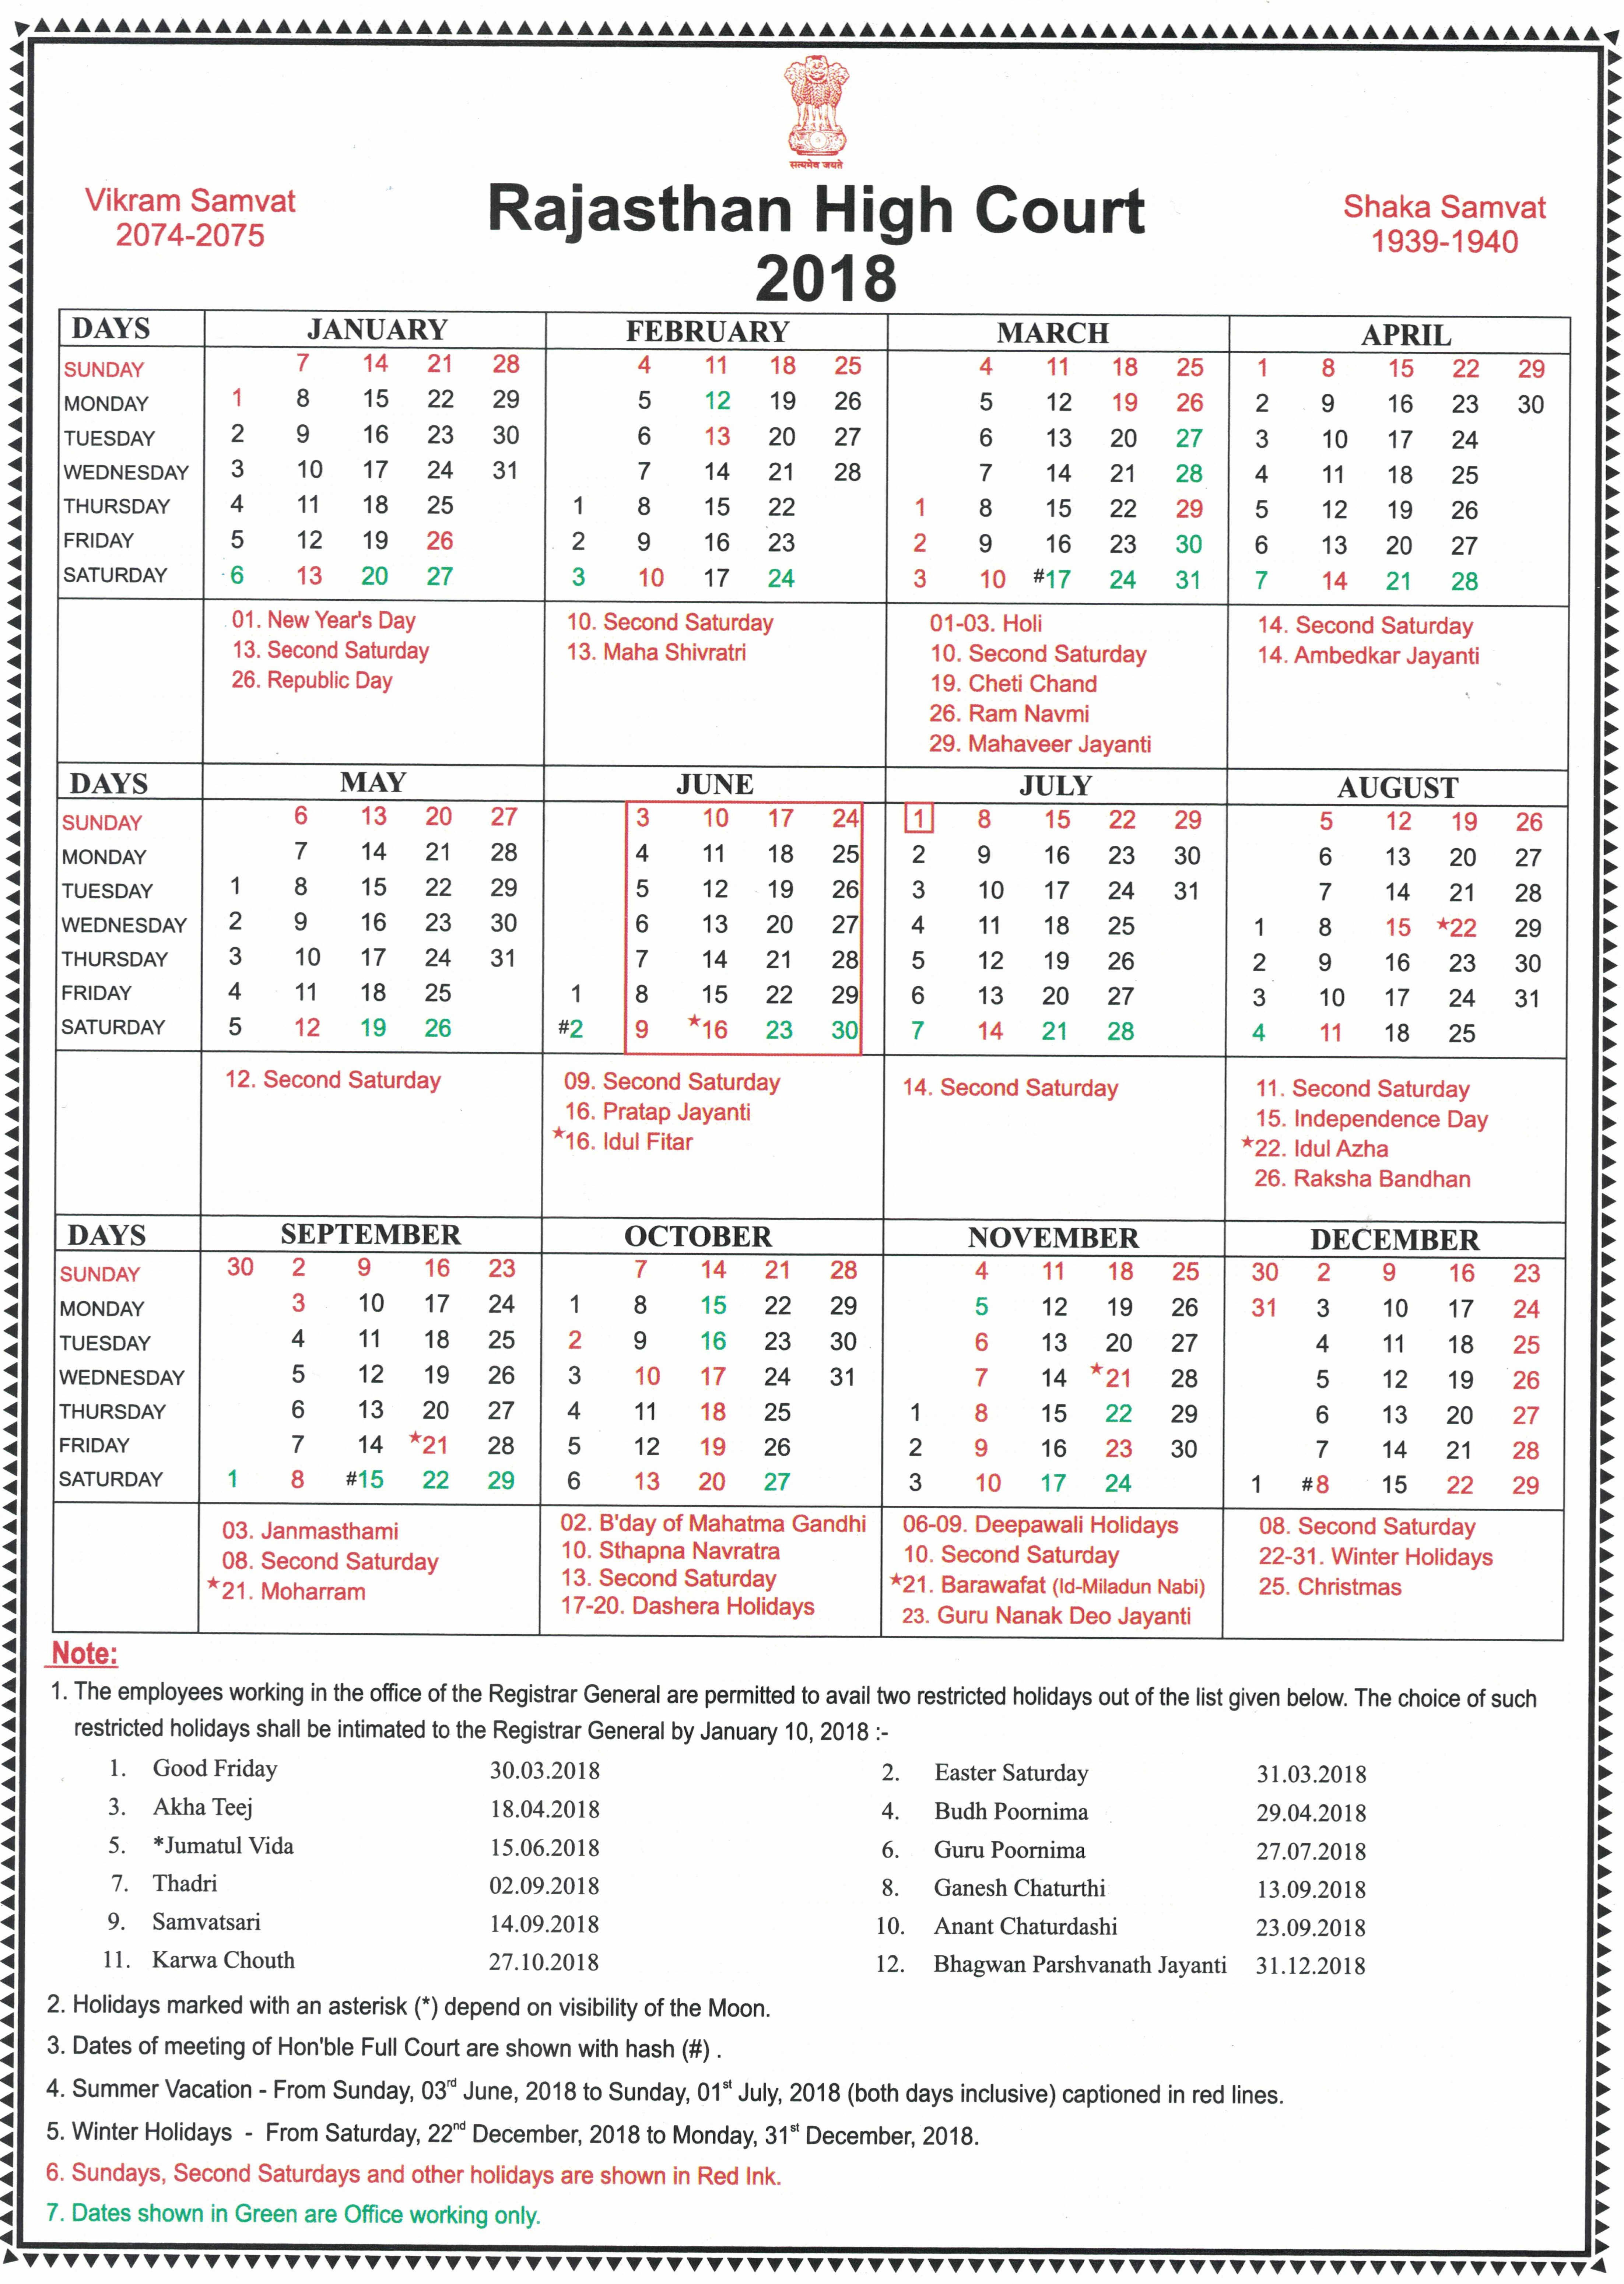 Rajasthan High Court Calendar,2018 within Kerala High Court Calendar